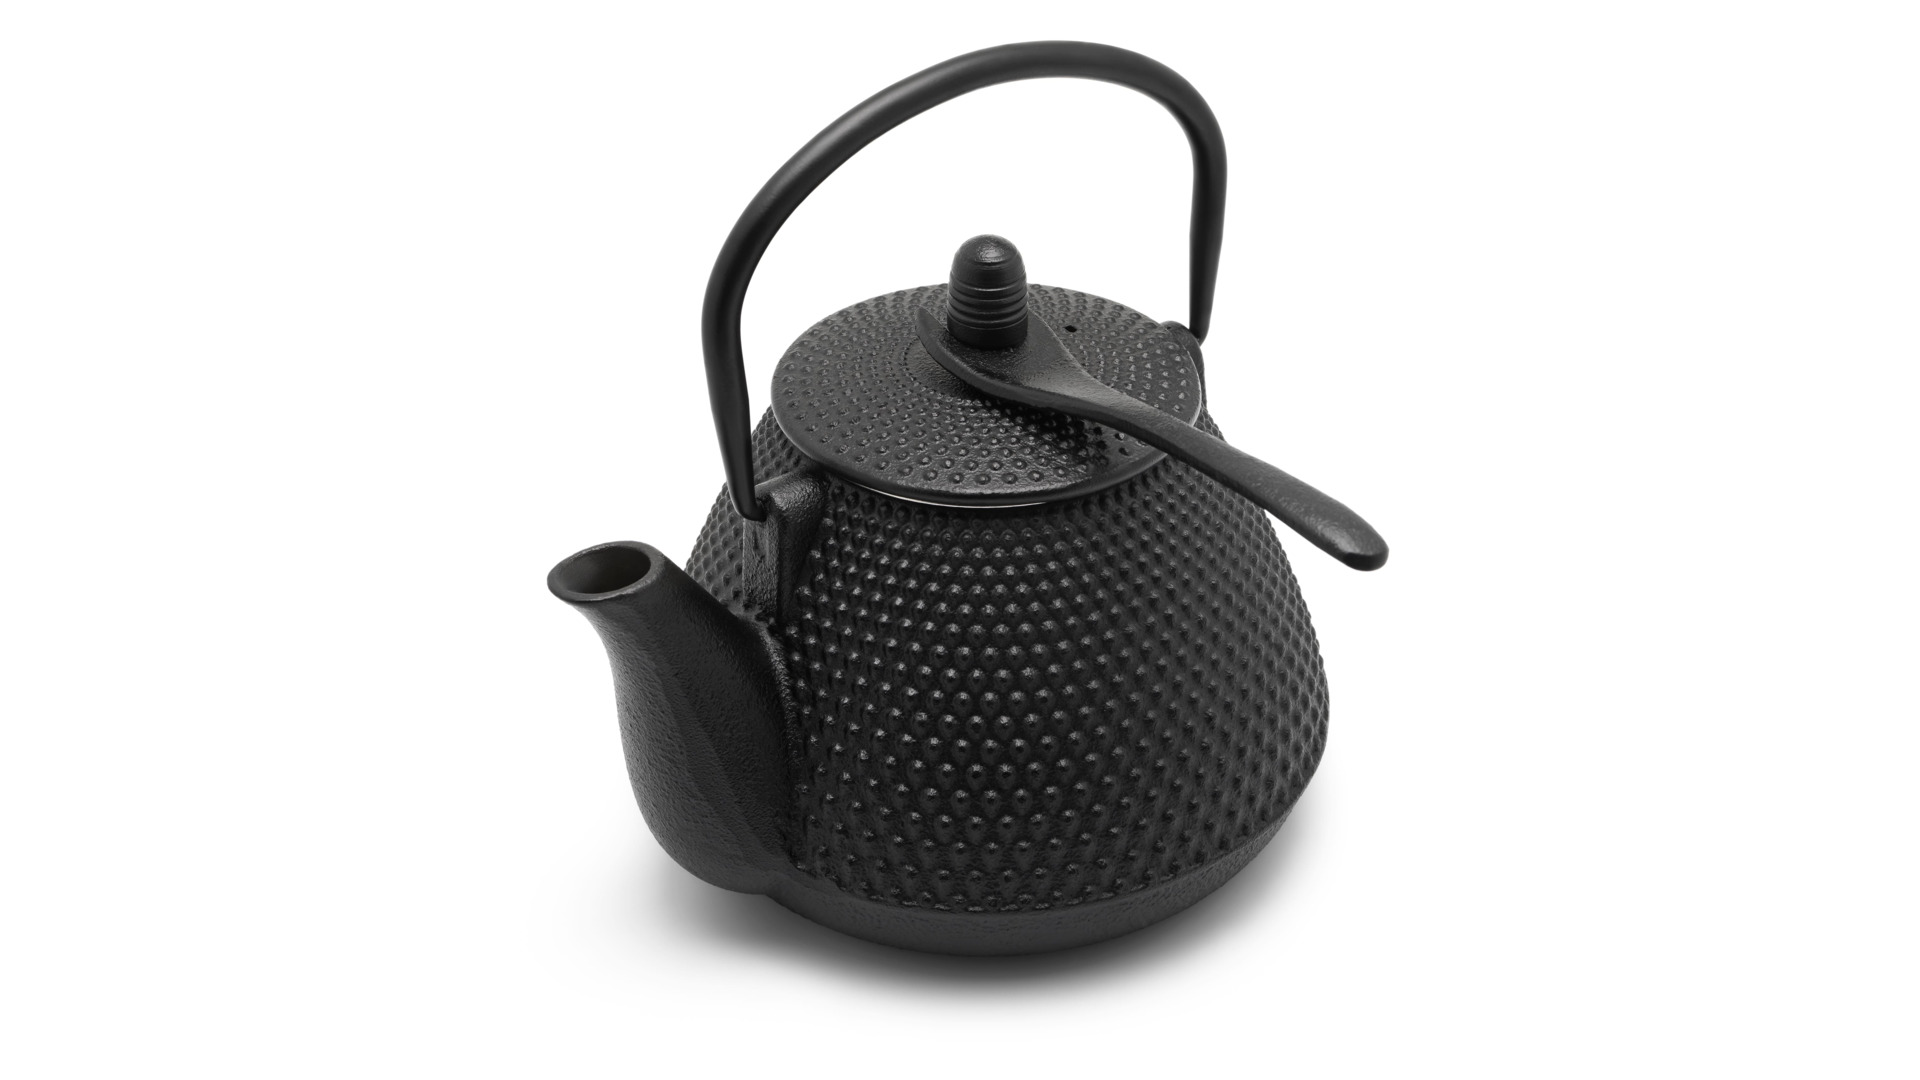 Чайник заварочный Bredemeijer Wuhan с фильтром, 1л, чугун, черный